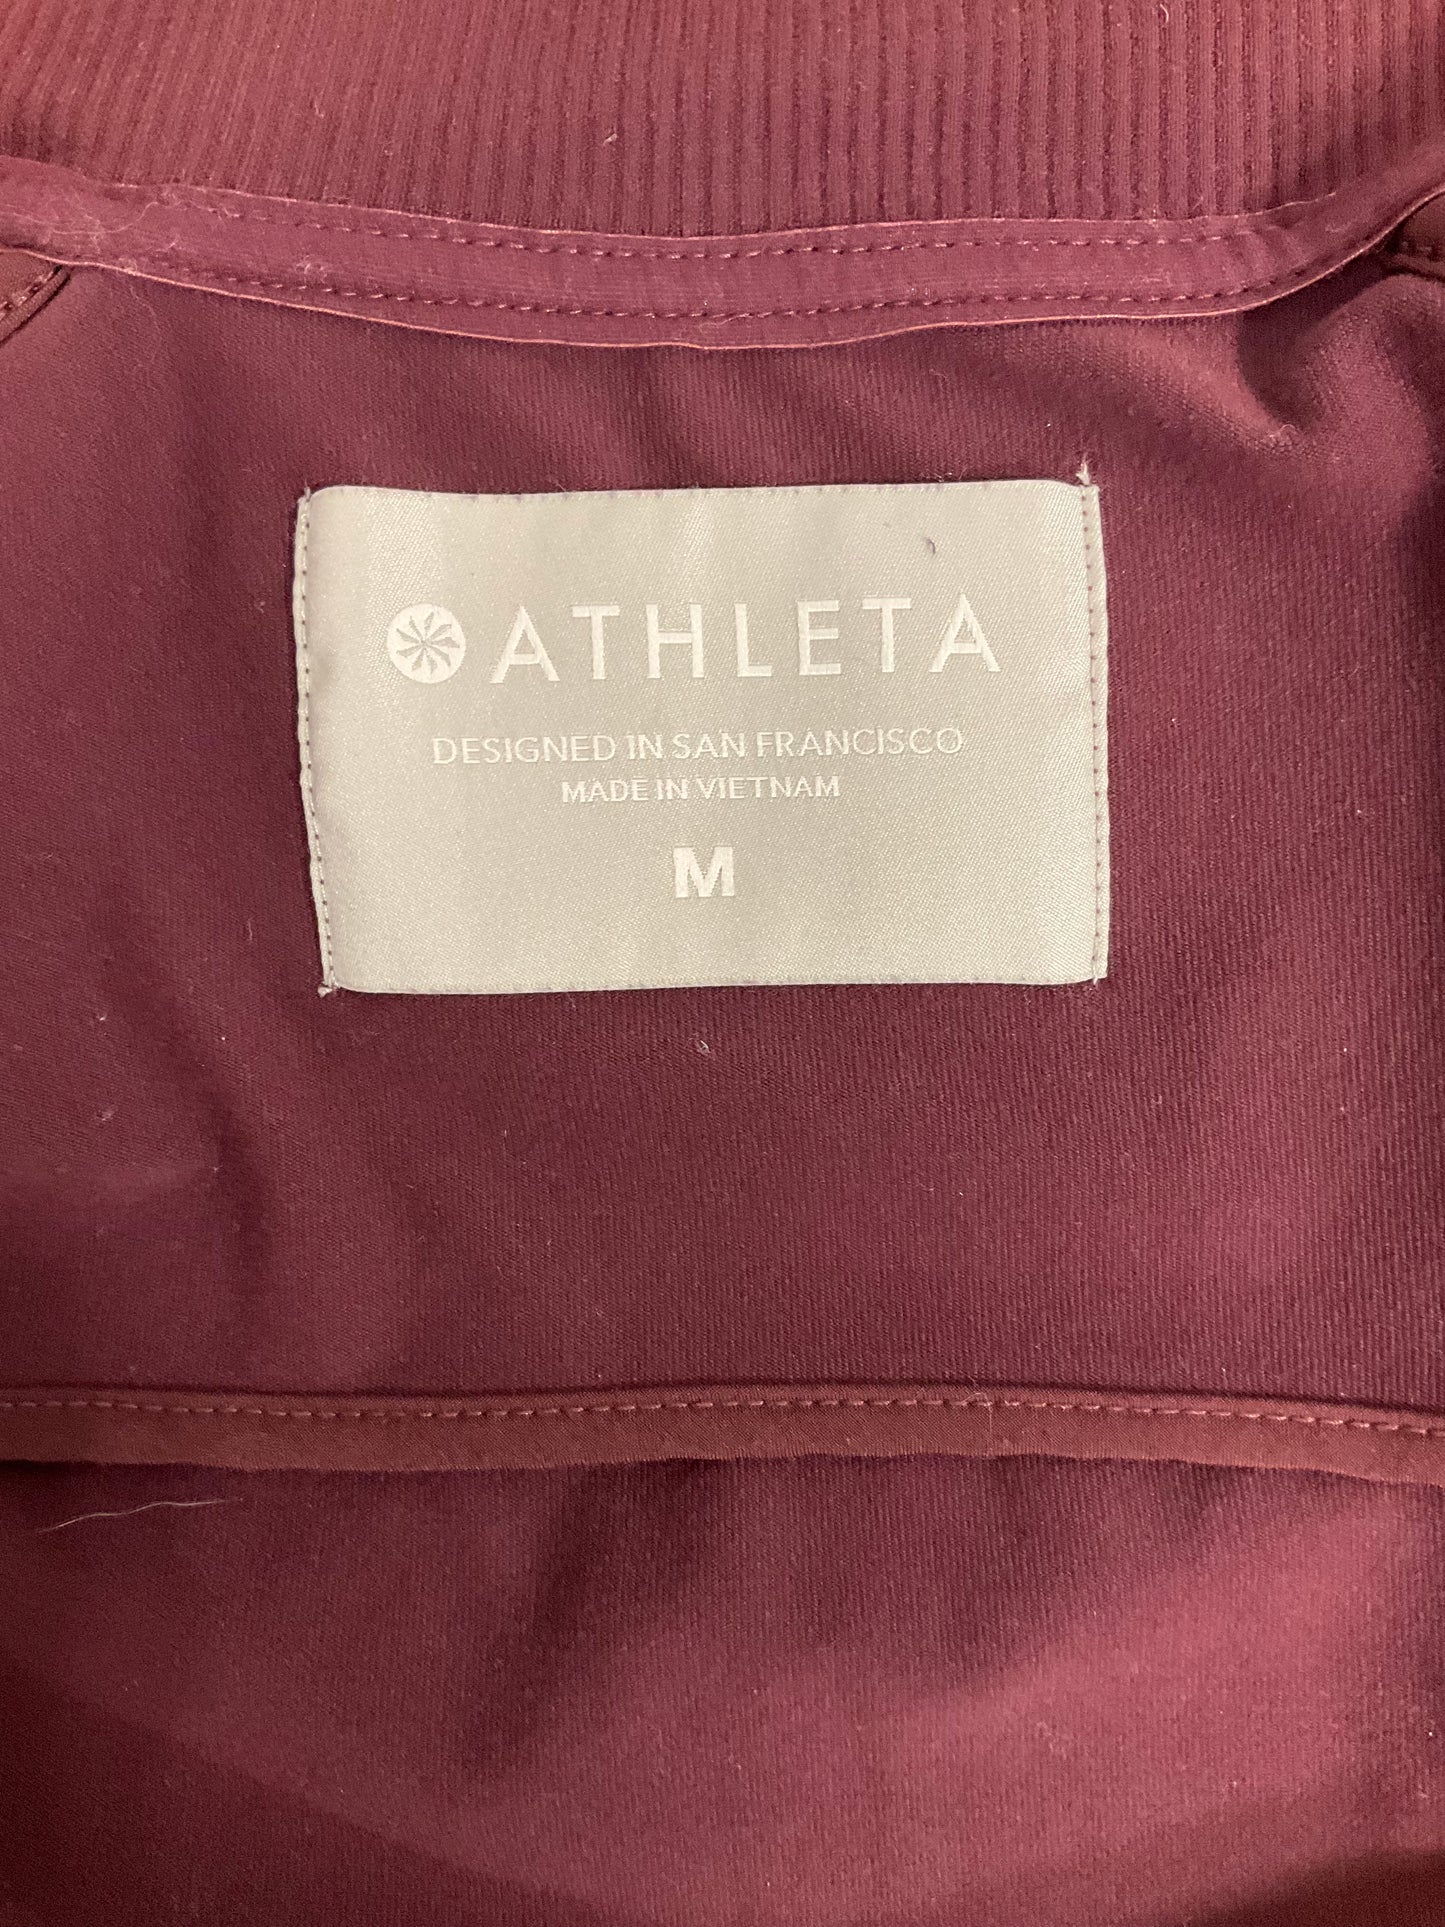 Athletic Jacket By Athleta  Size: M